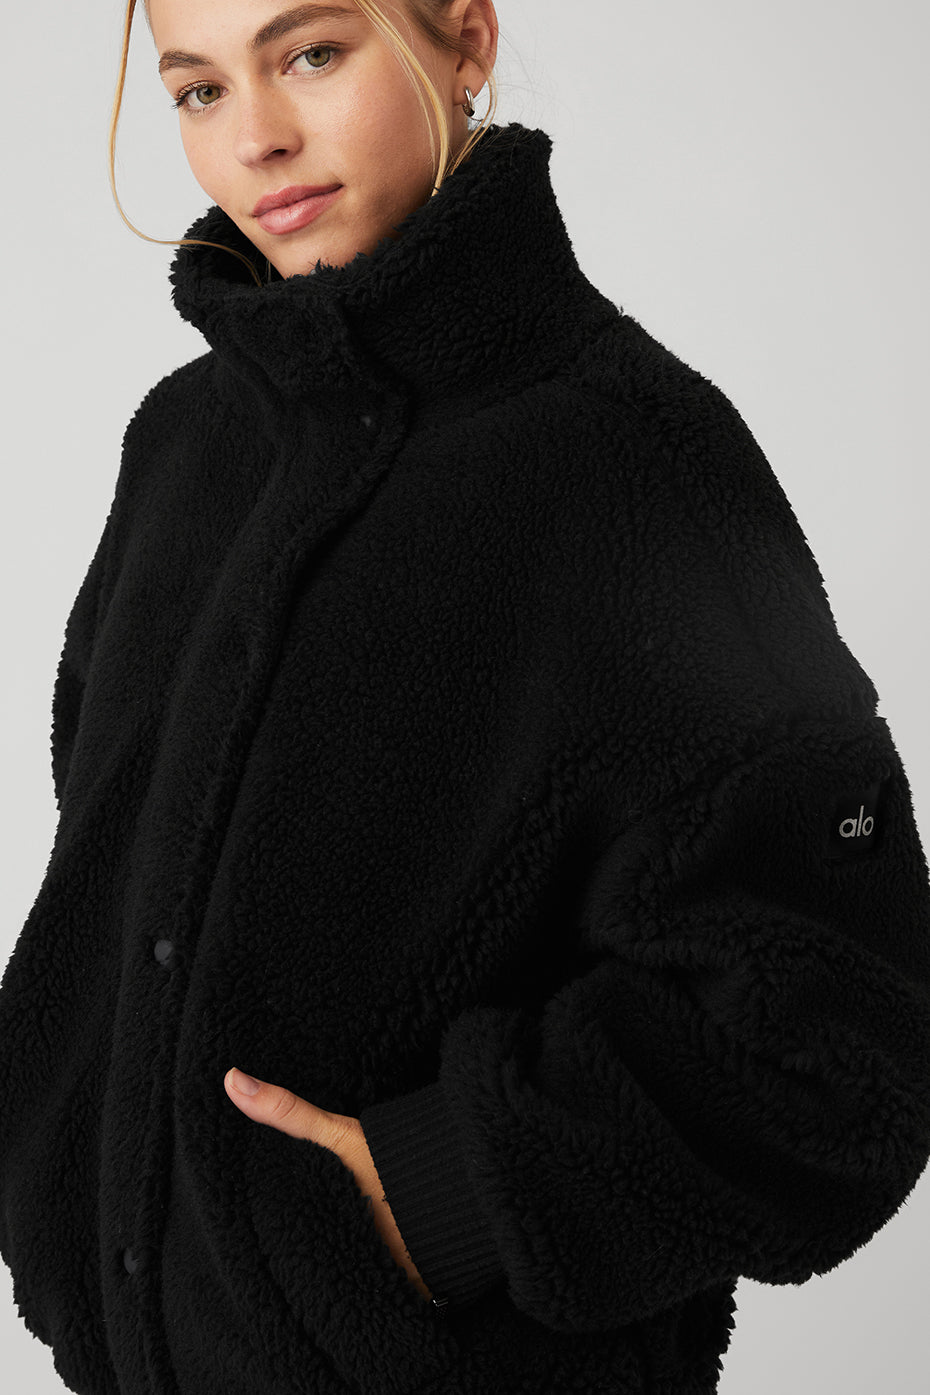 Sherpa Varsity Jacket - Black